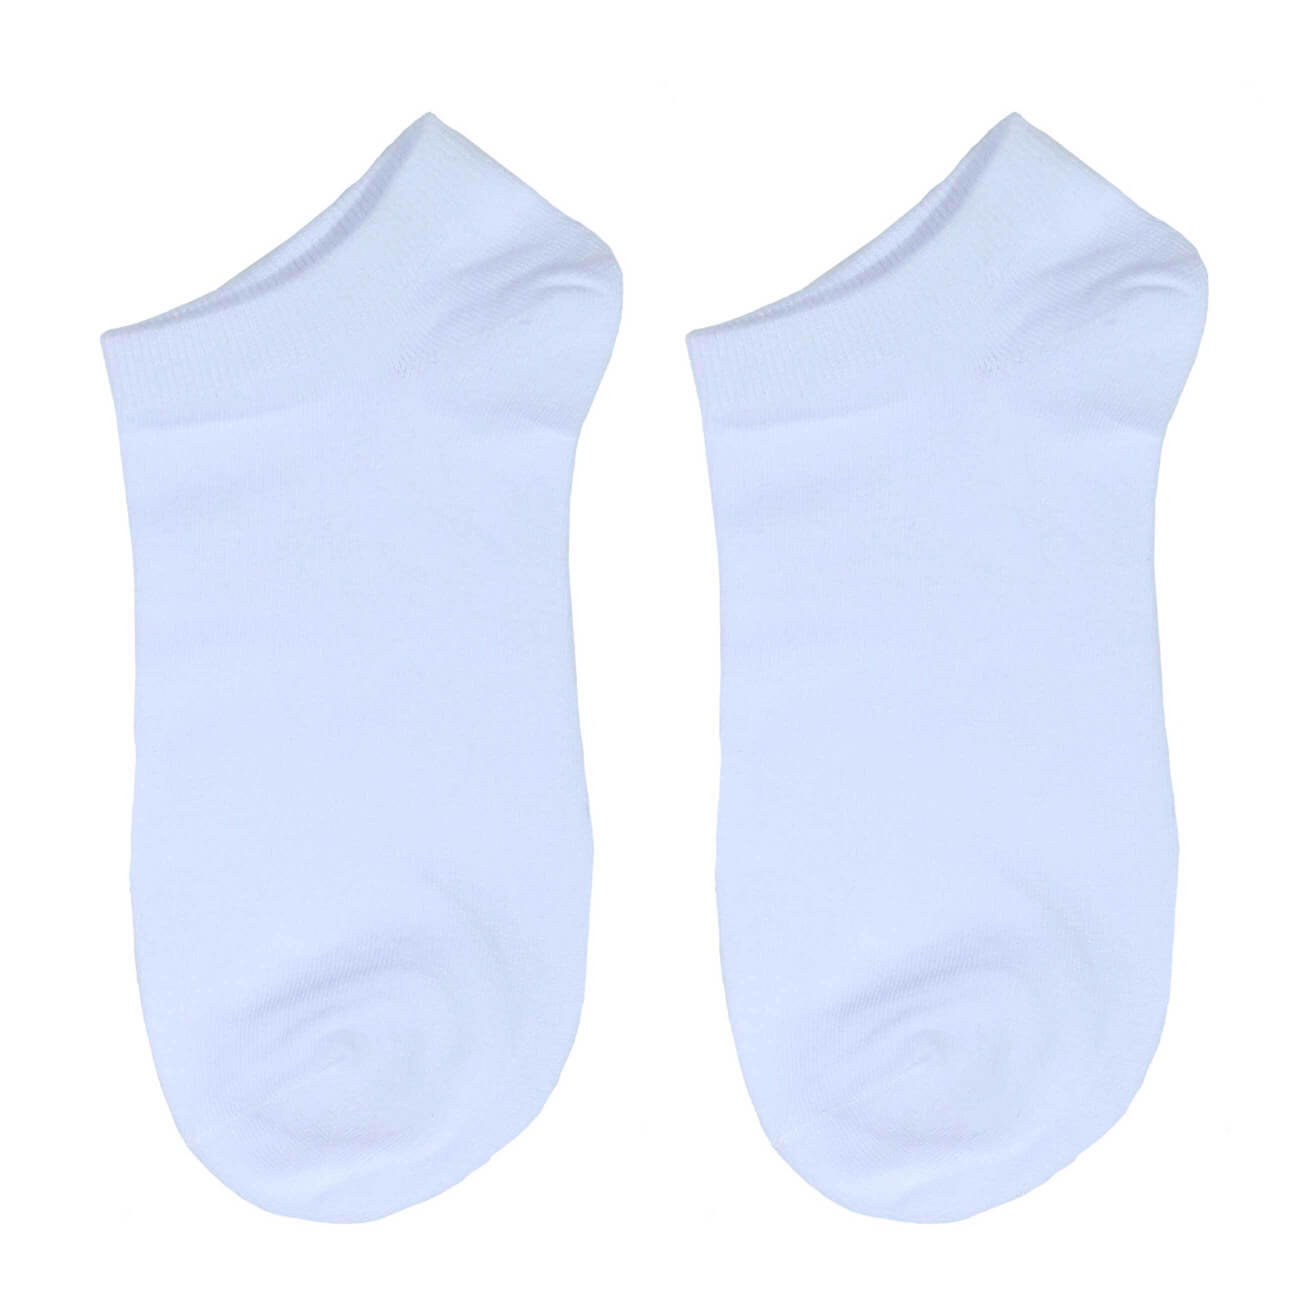 Носки мужские, р. 43-46, хлопок/полиэстер, белые, Basic носки следки женские р 36 38 хлопок полиэстер белые basic